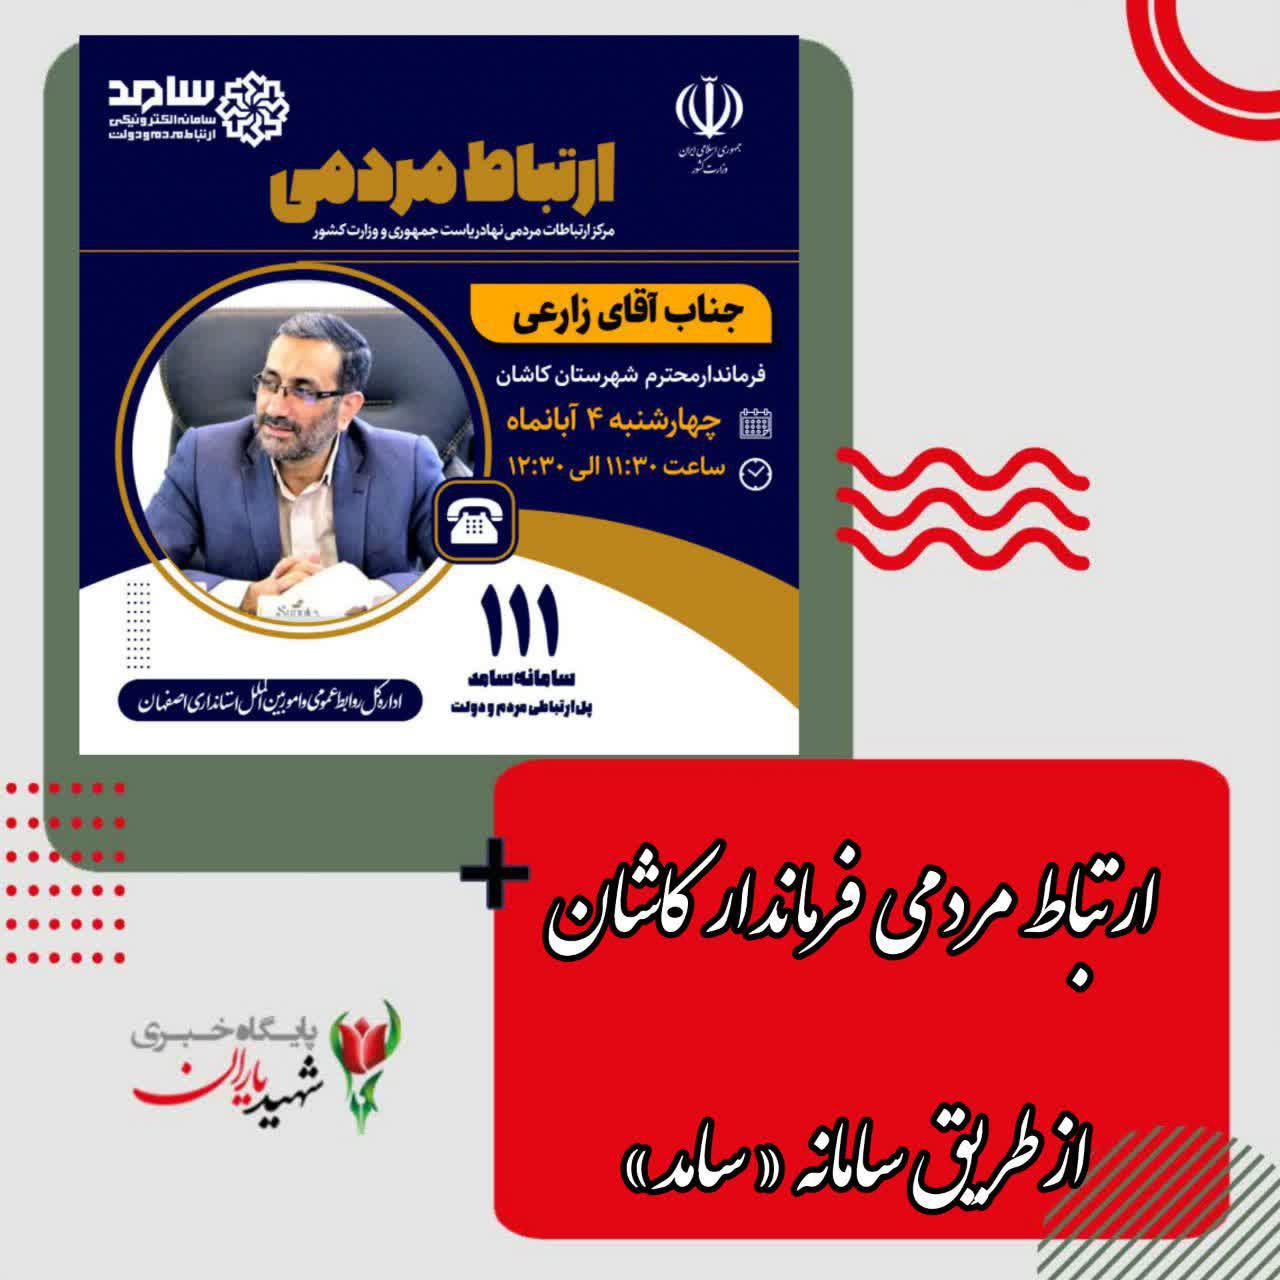 ارتباط تلفنی و اینترنتی مردمی با فرماندار شهرستان کاشان از طریق سامانه تلفنی سامد (۱۱۱)